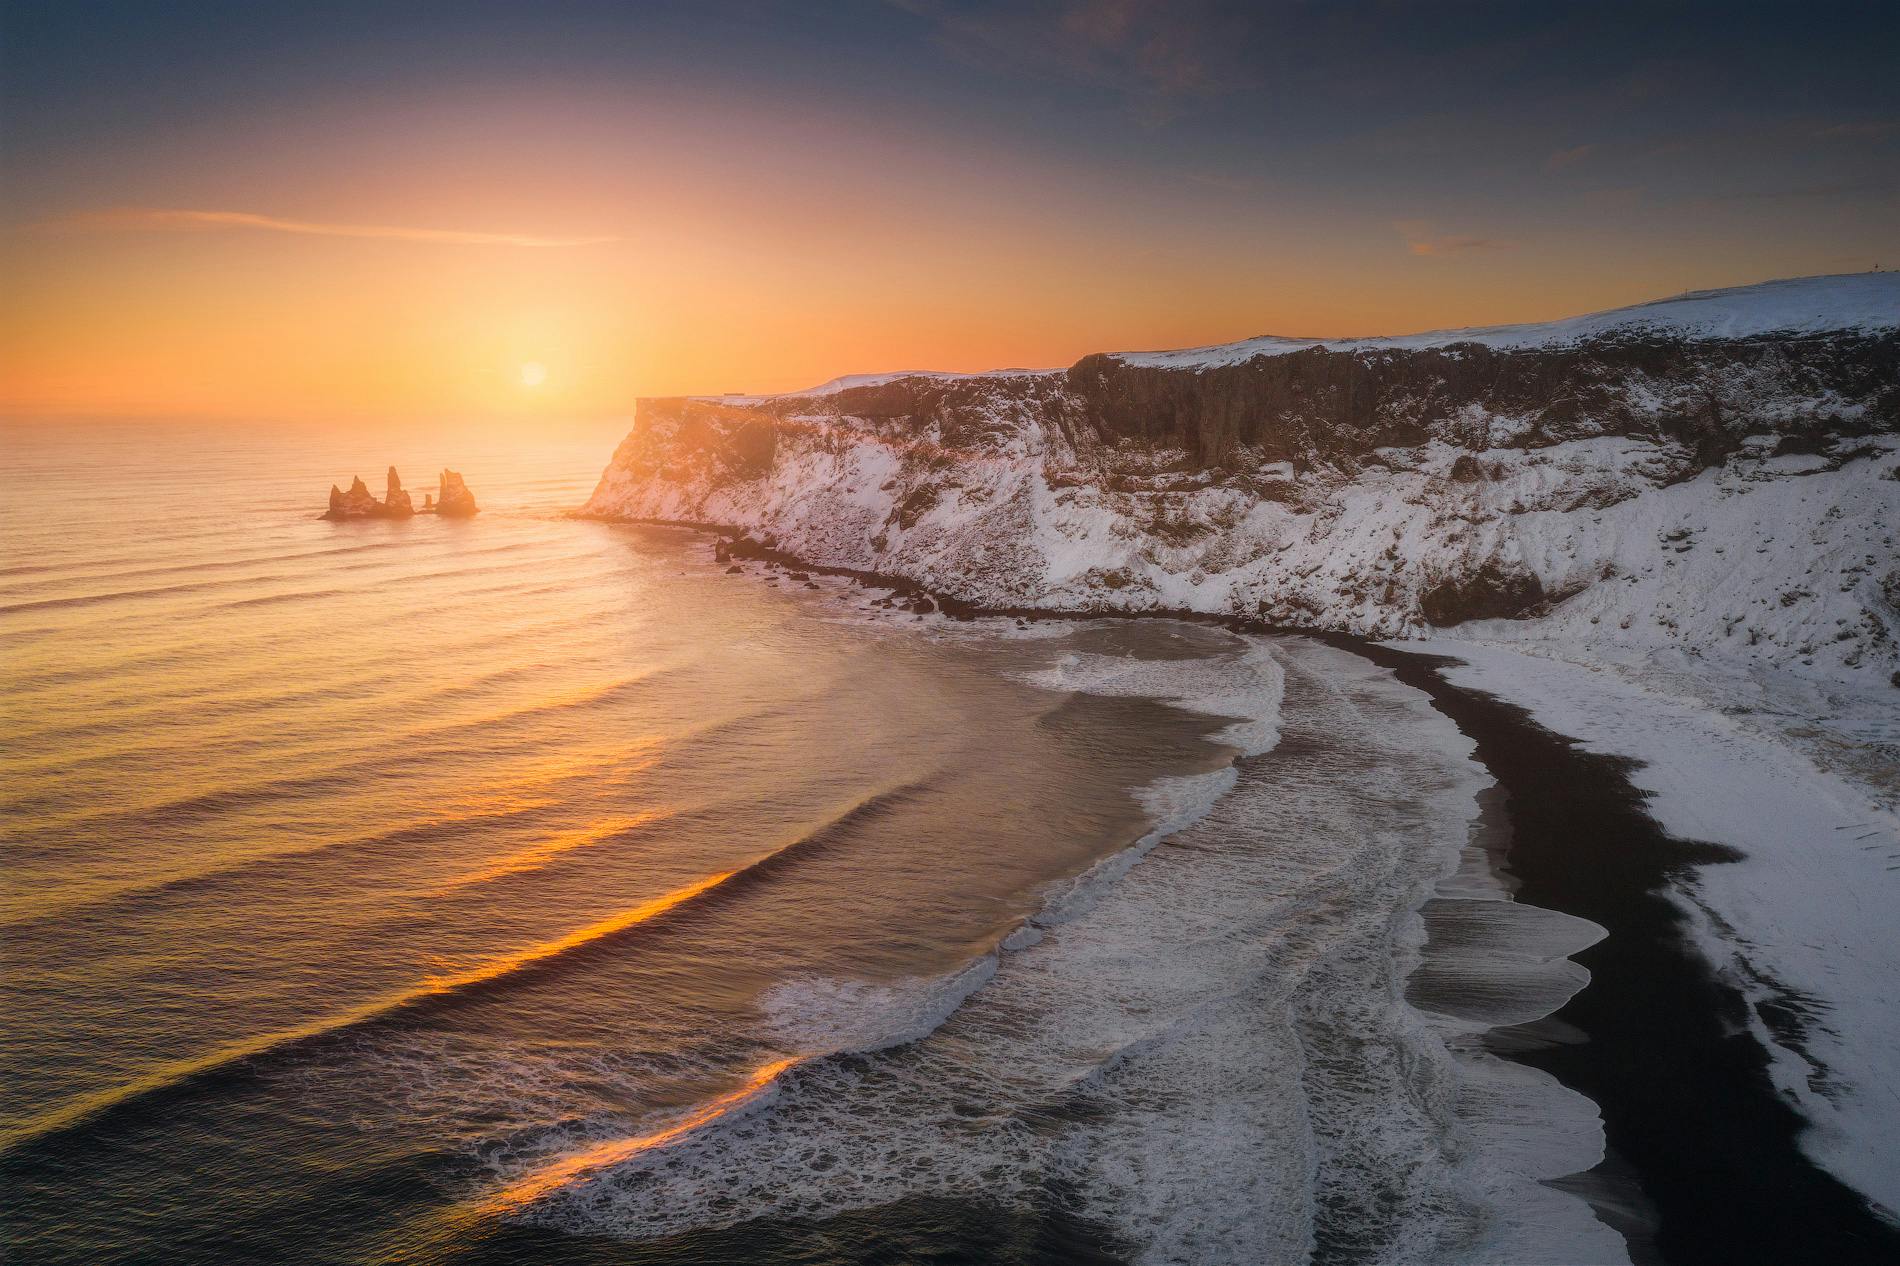 I ricchi colori invernali accompagnano le ore dorate di luce nell'inverno islandese.